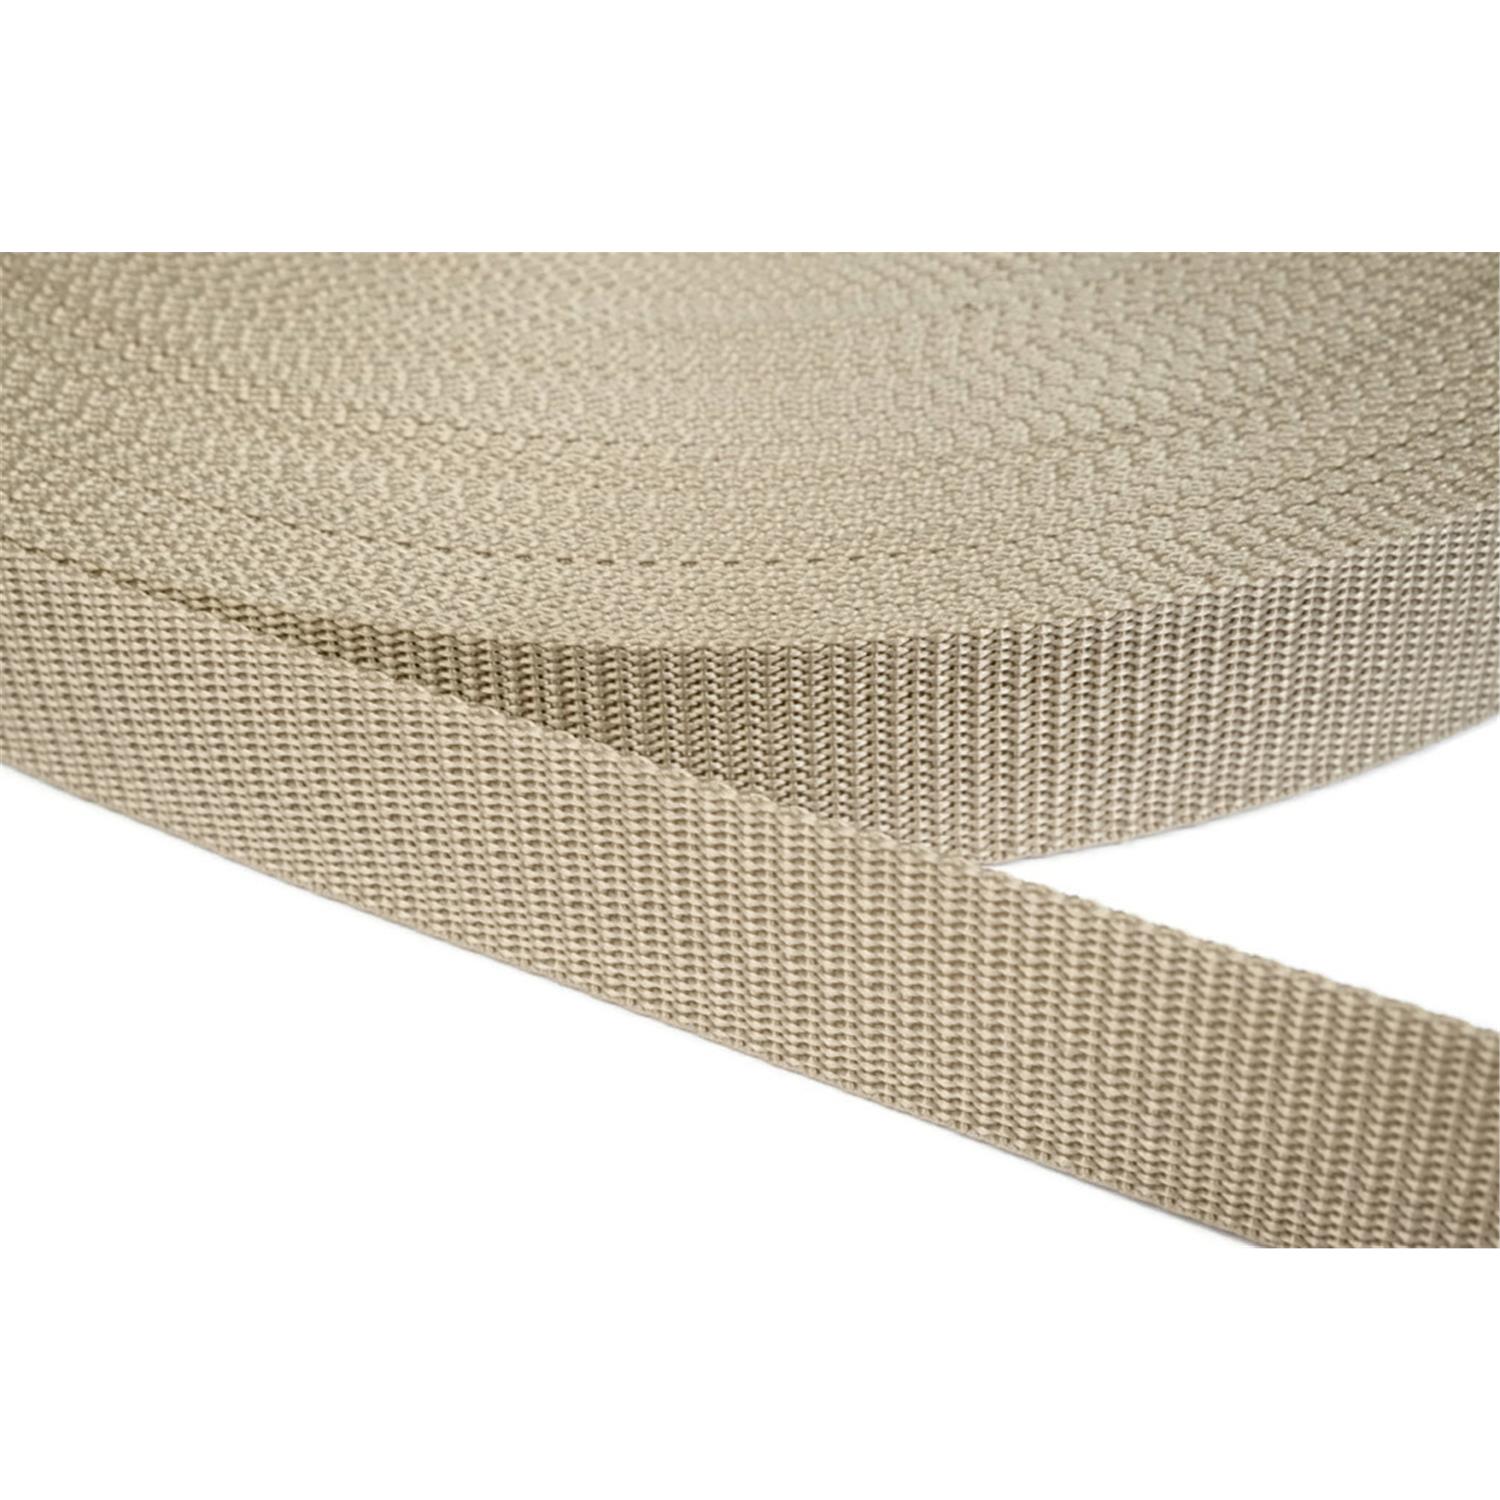 Gurtband 30mm breit aus Polypropylen in 41 Farben 03 - beige 6 Meter